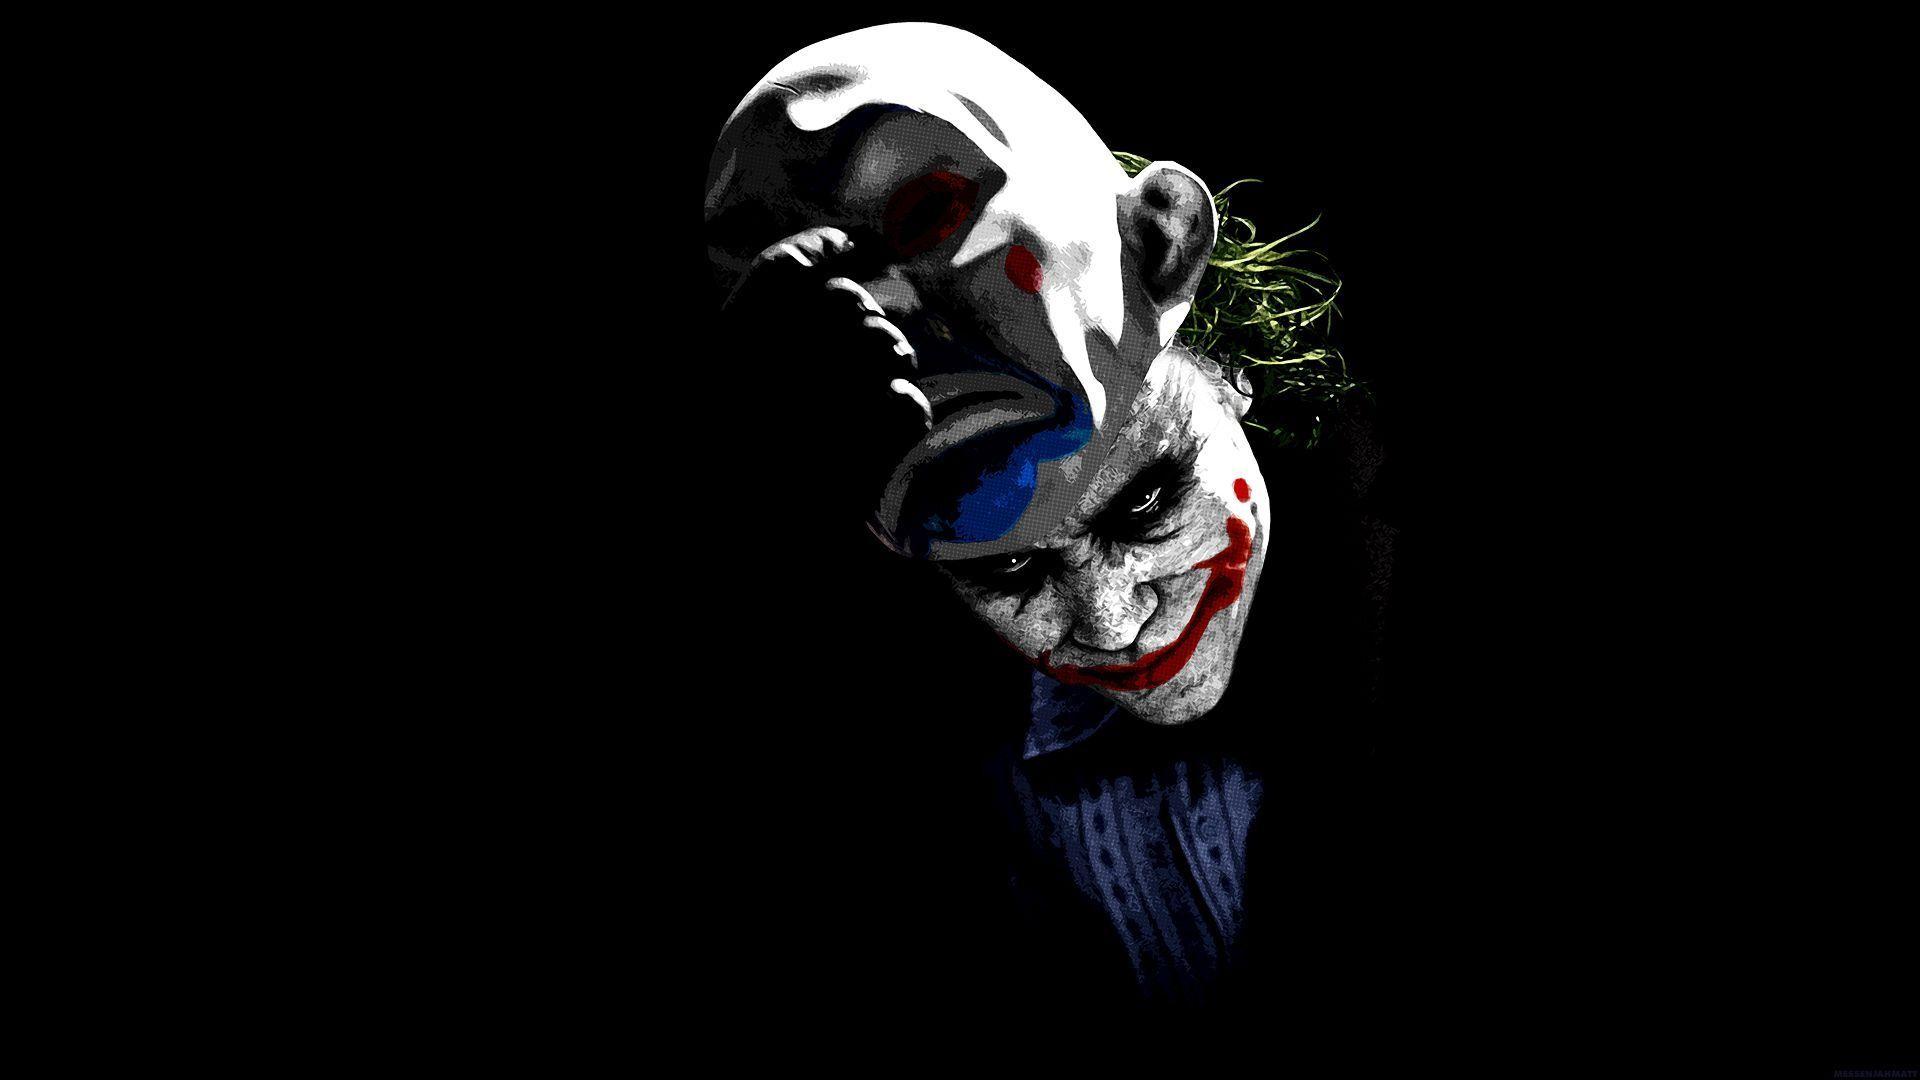 Heath Ledger As The Joker New Movie MySpace Blicer Wallpaper